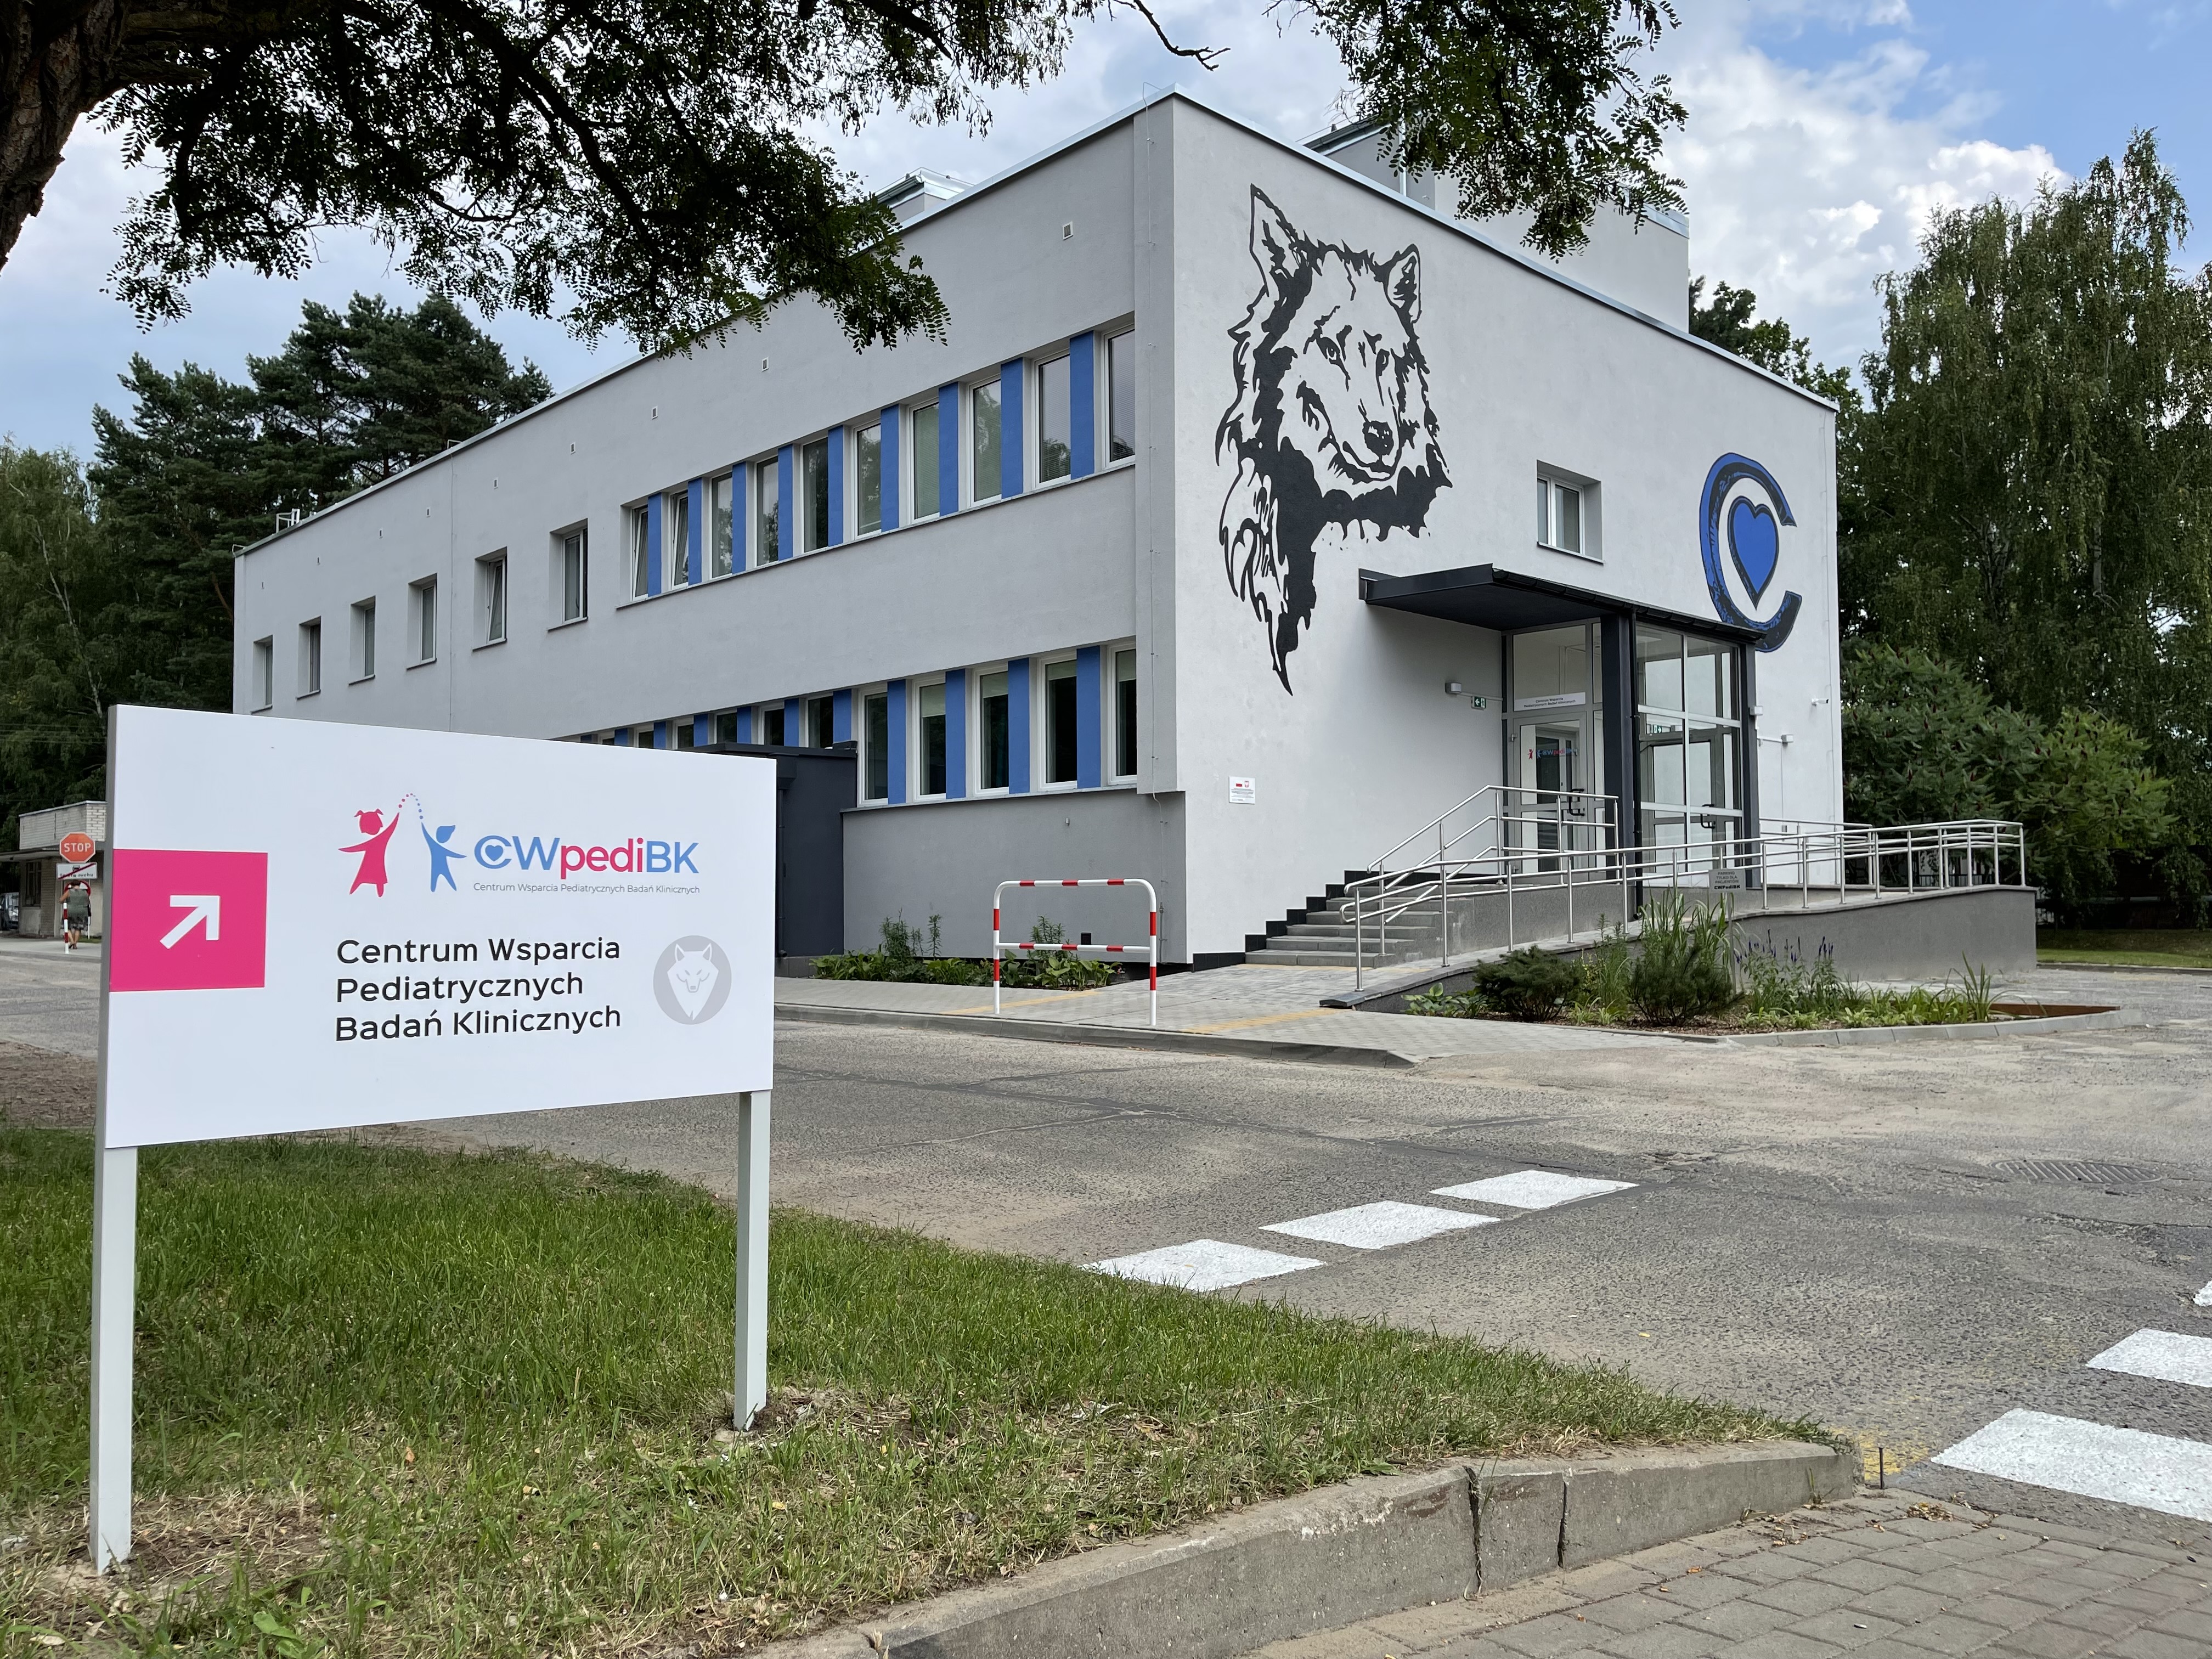 Pierwsze w Polsce Centrum Wsparcia Pediatrycznych Badań Klinicznych 